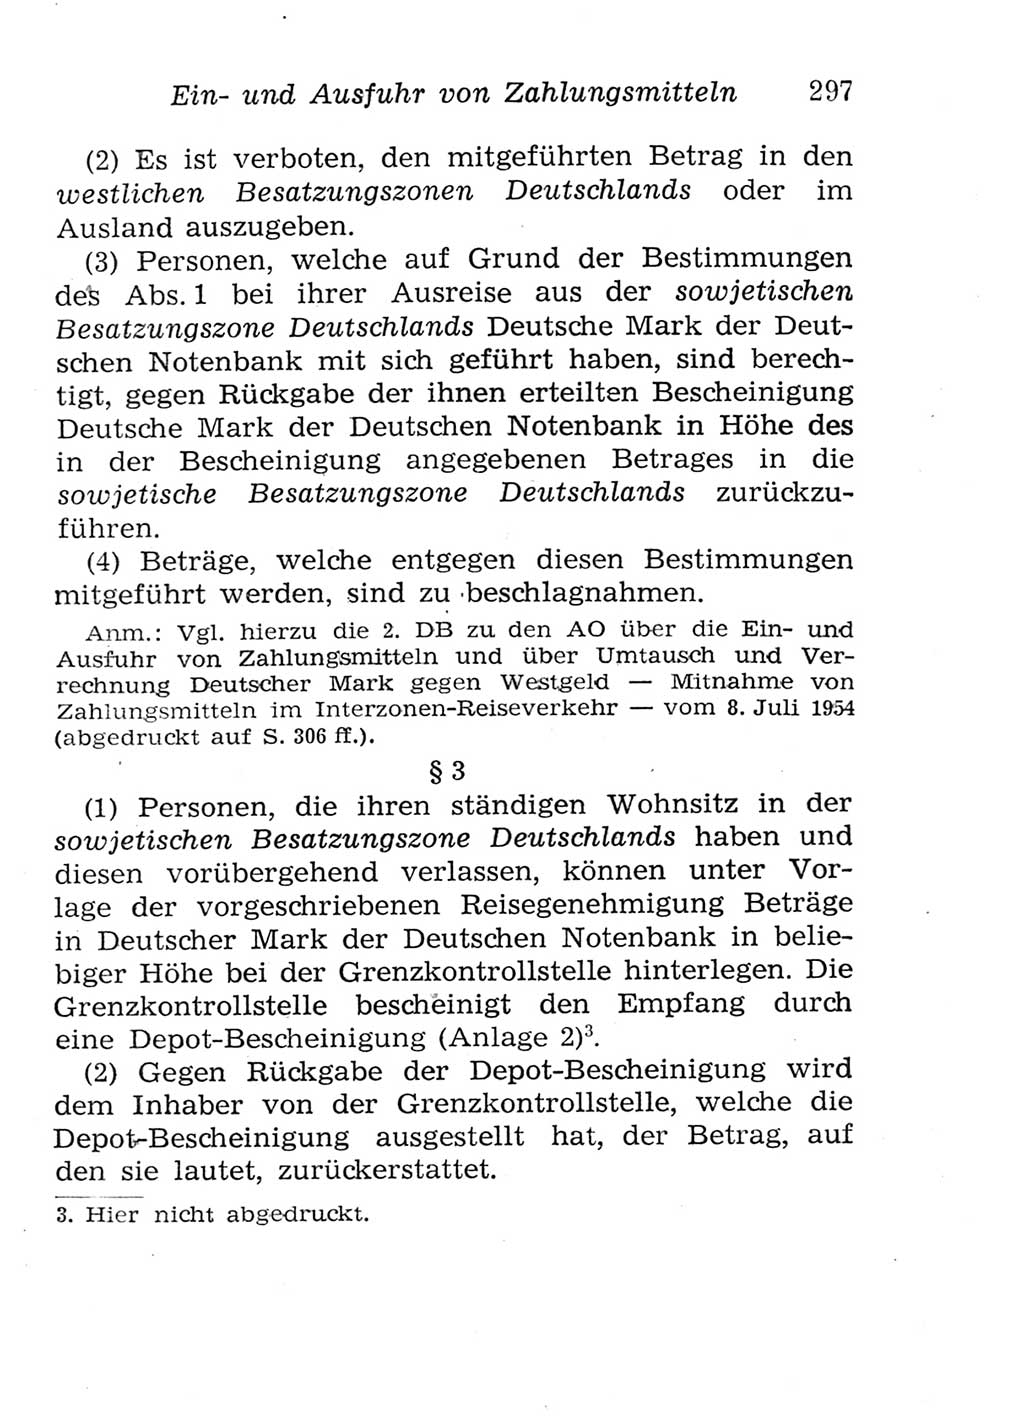 Strafgesetzbuch (StGB) und andere Strafgesetze [Deutsche Demokratische Republik (DDR)] 1957, Seite 297 (StGB Strafges. DDR 1957, S. 297)